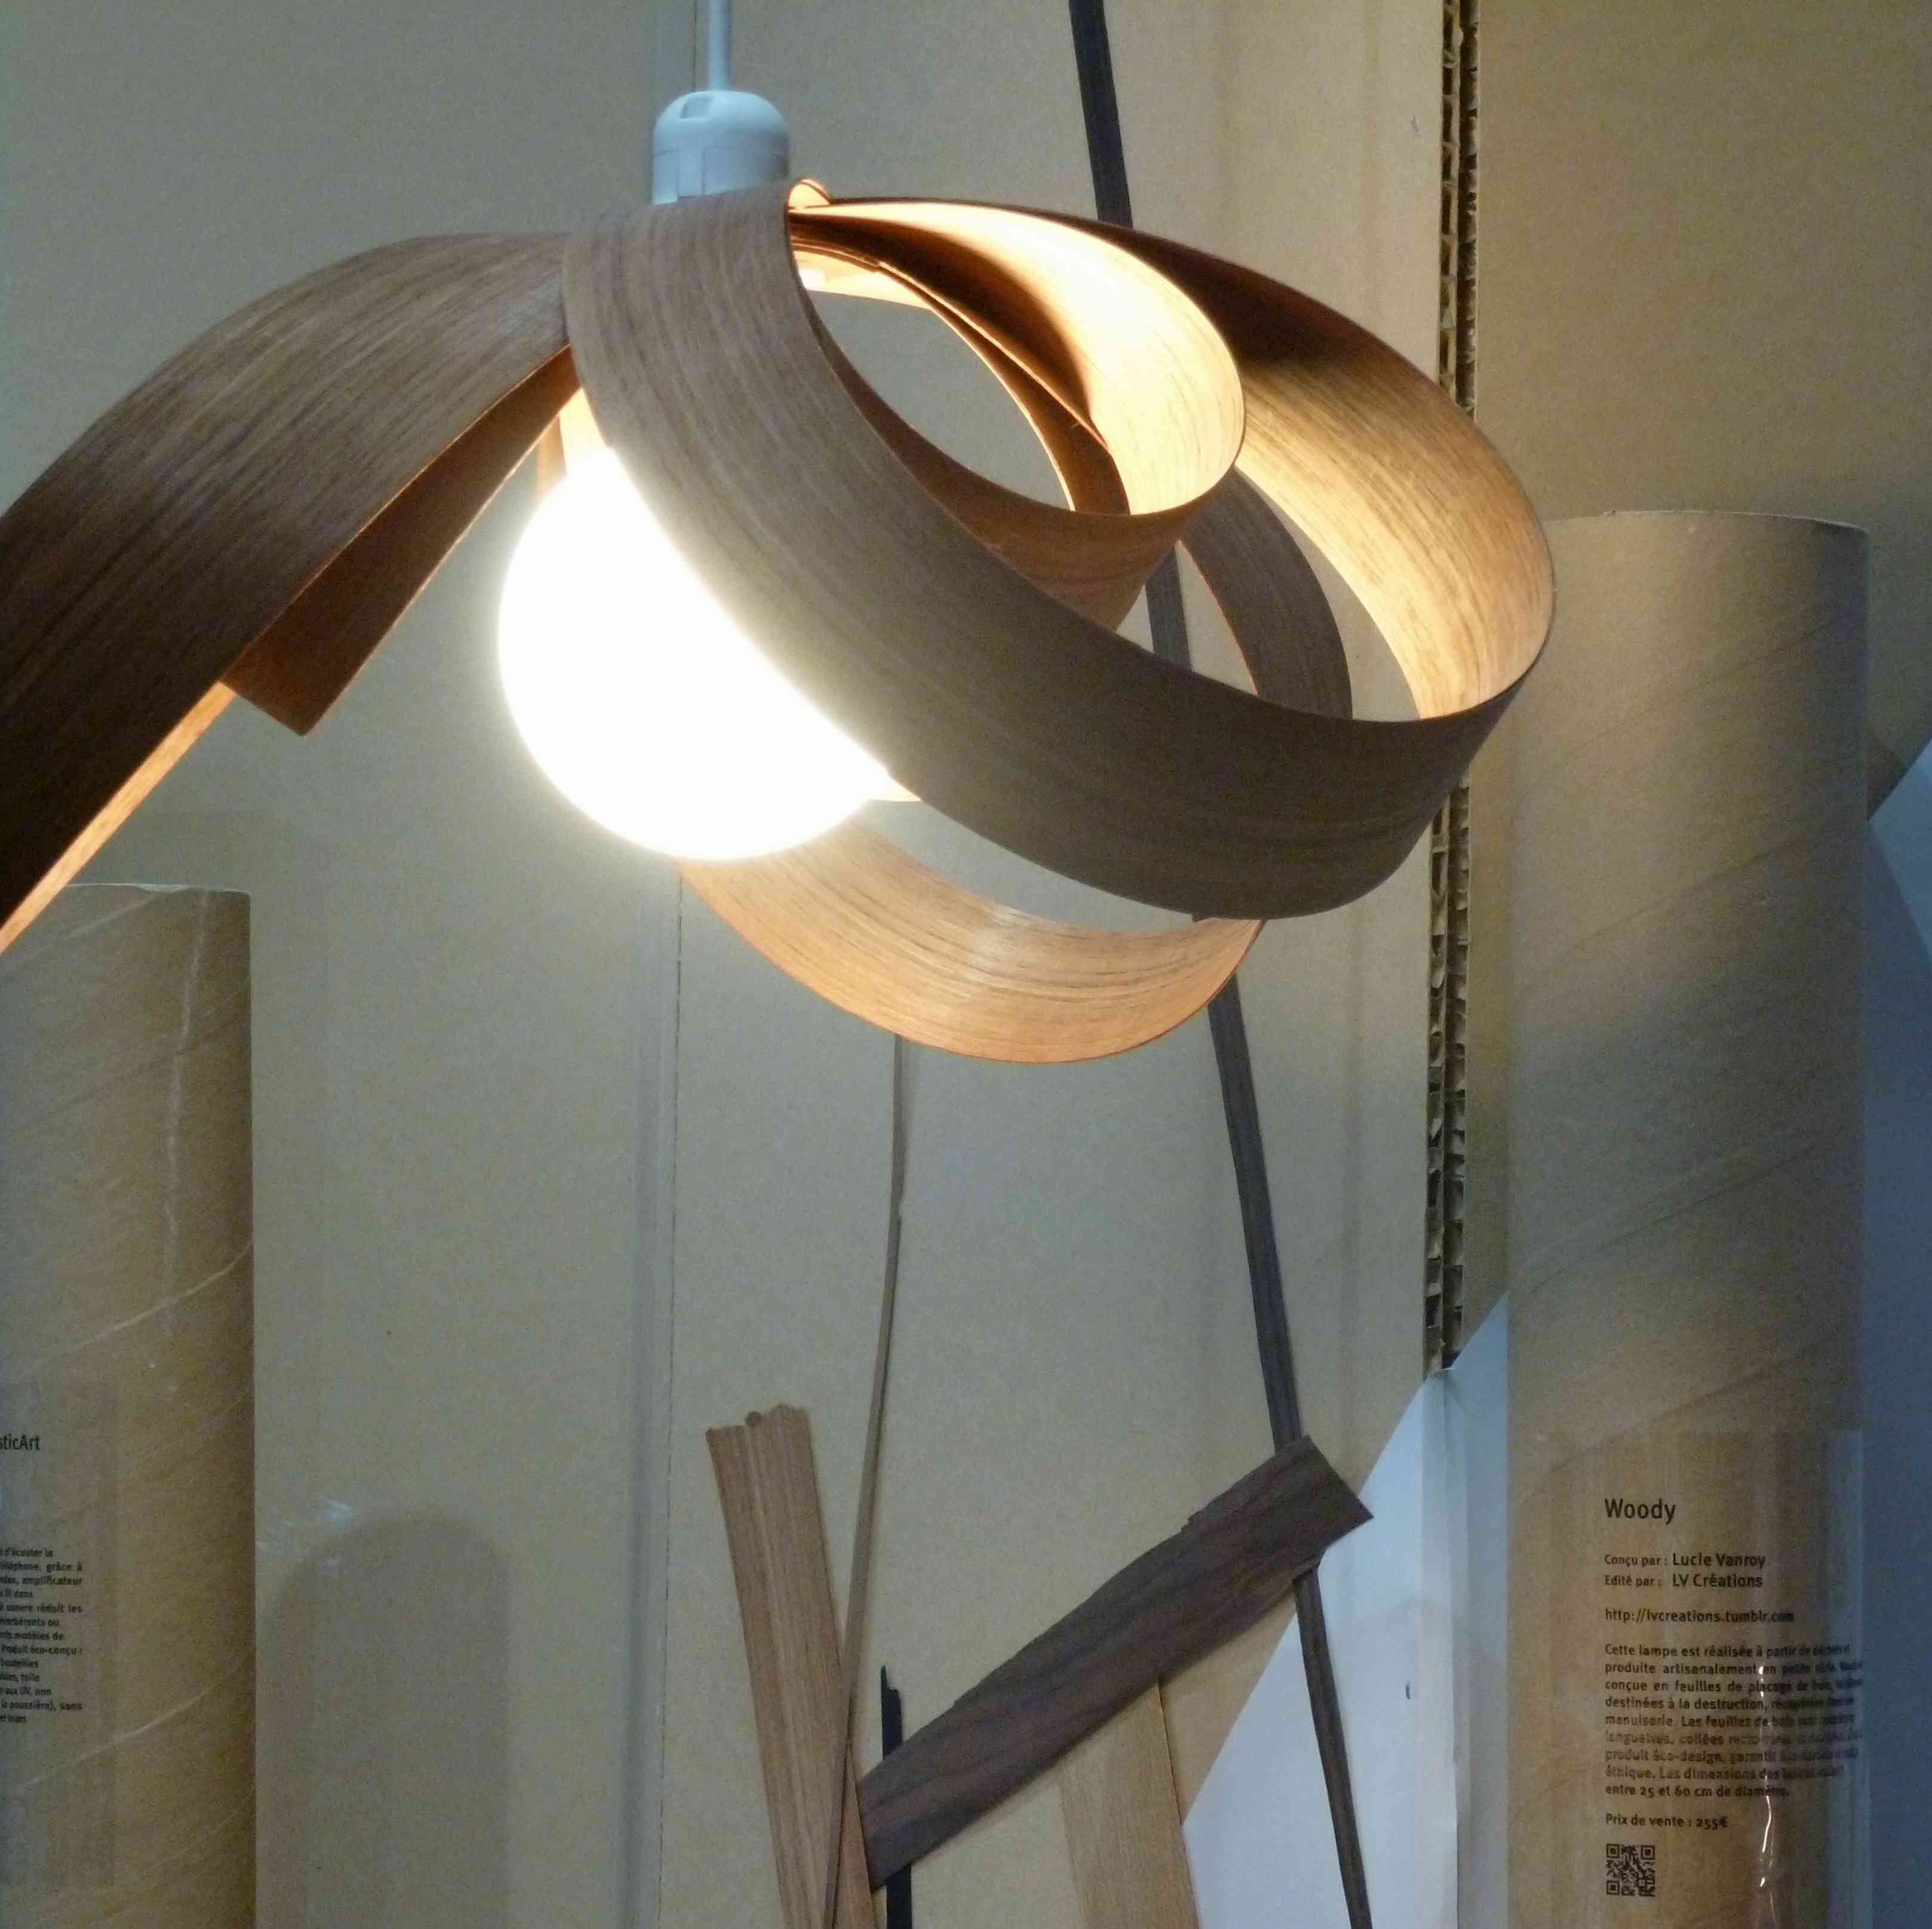 Lampe Woody Lucie Vanroy Design Reservoir 2013